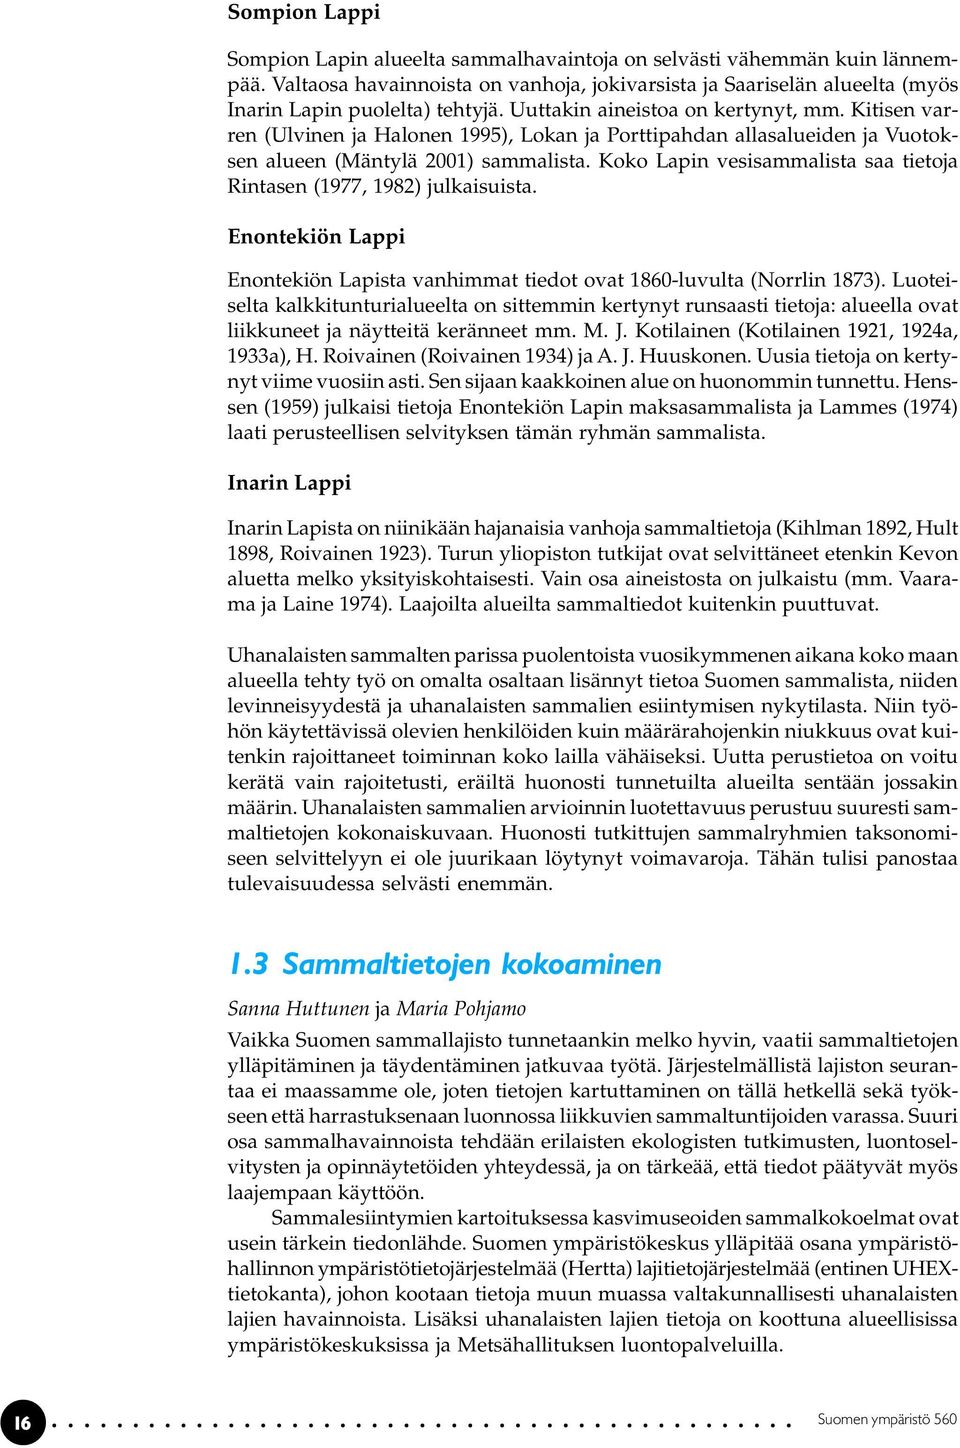 Koko Lapin vesisammalista saa tietoja Rintasen (1977, 1982) julkaisuista. Enontekiön Lappi Enontekiön Lapista vanhimmat tiedot ovat 1860-luvulta (Norrlin 1873).